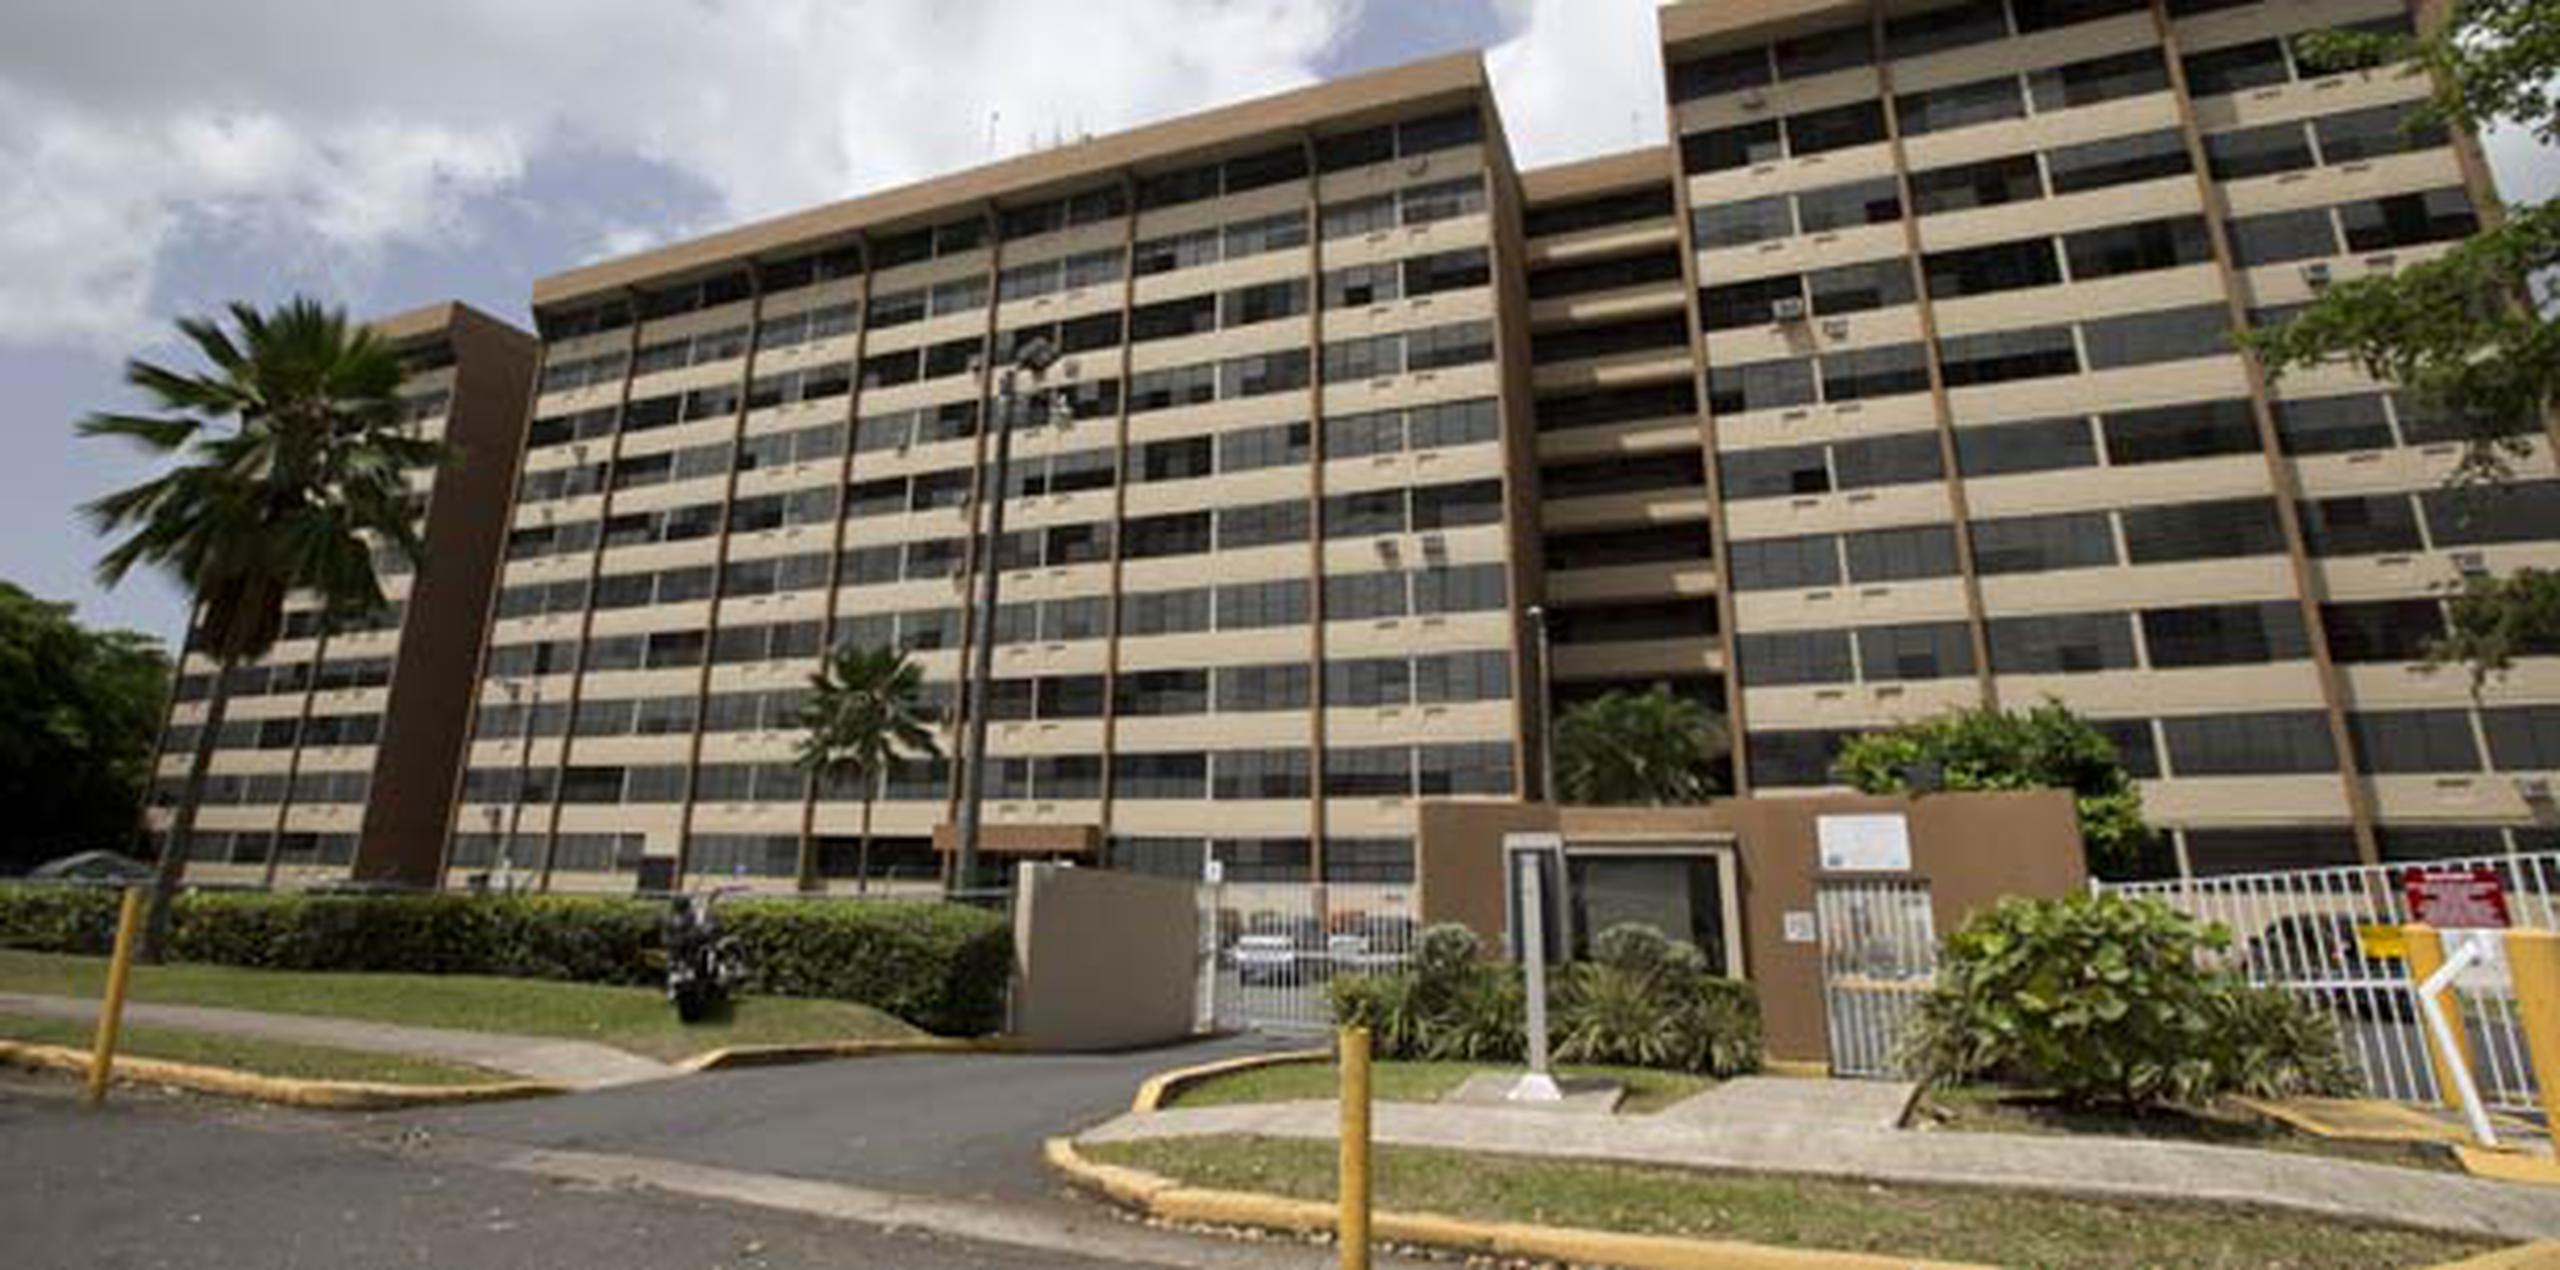 La tragedia ocurrió en un apartamento del condominio Torres de las Cumbres, en San Juan. (tonito.zayas@gfrmedia.com)